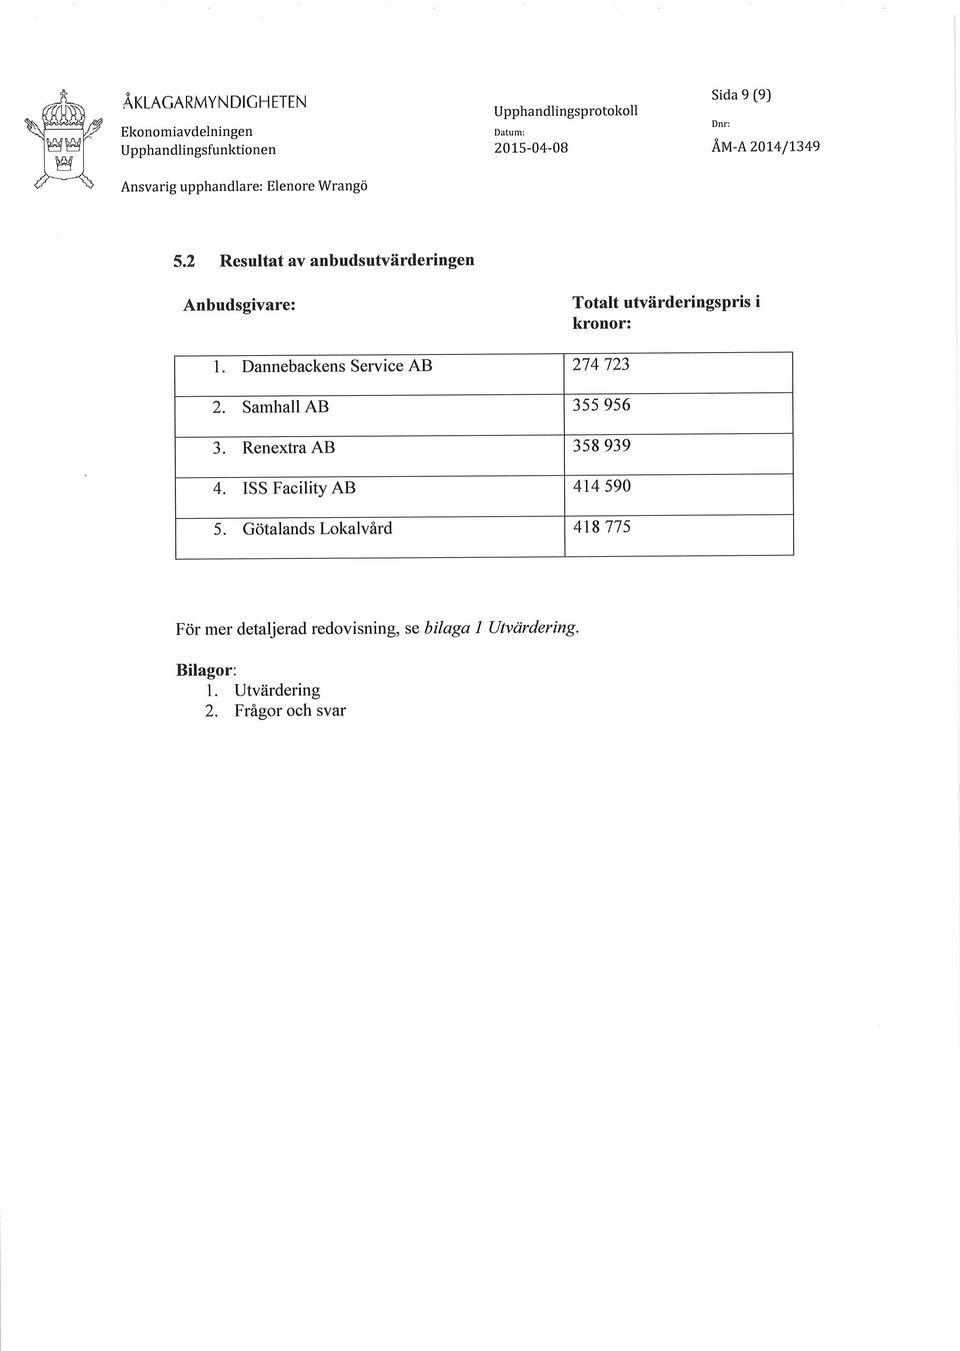 2 Resultatavanbudsutvärderingen Anbudsgivare: Totalt utvärderingspris i kronor: 1.